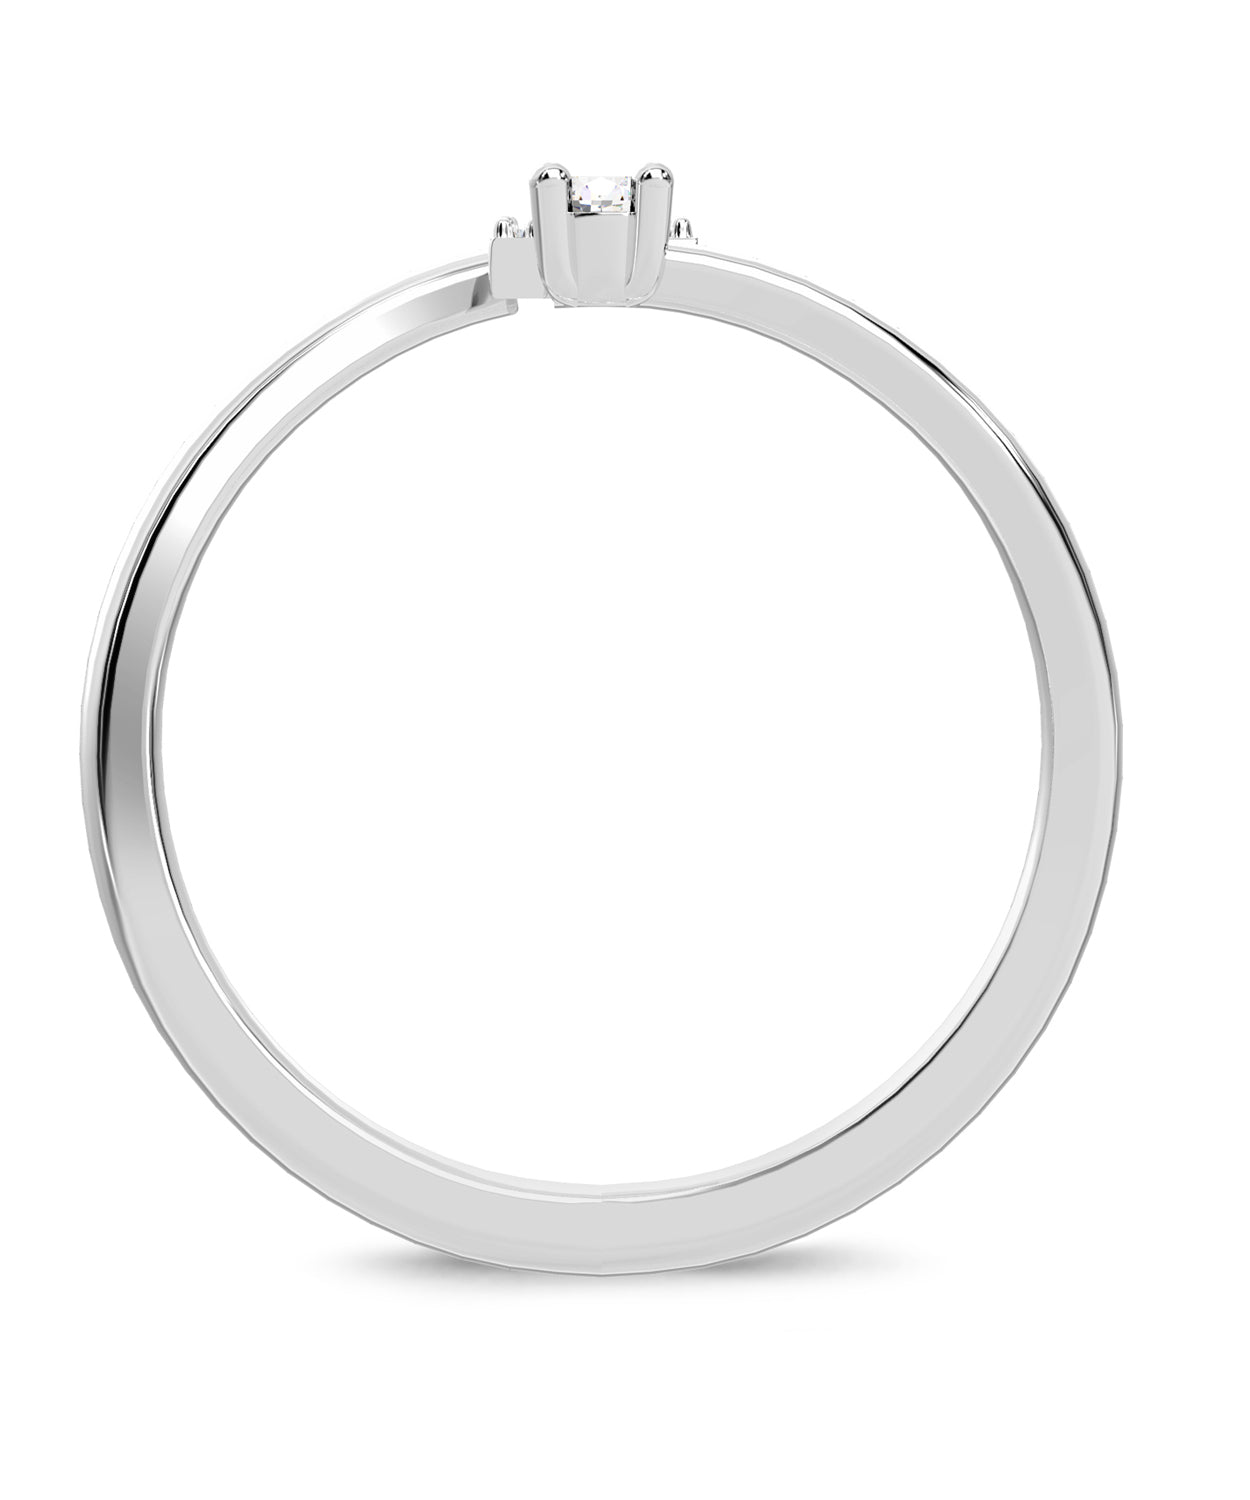 ESEMCO Diamond 18k White Gold Letter F Initial Open Ring View 2